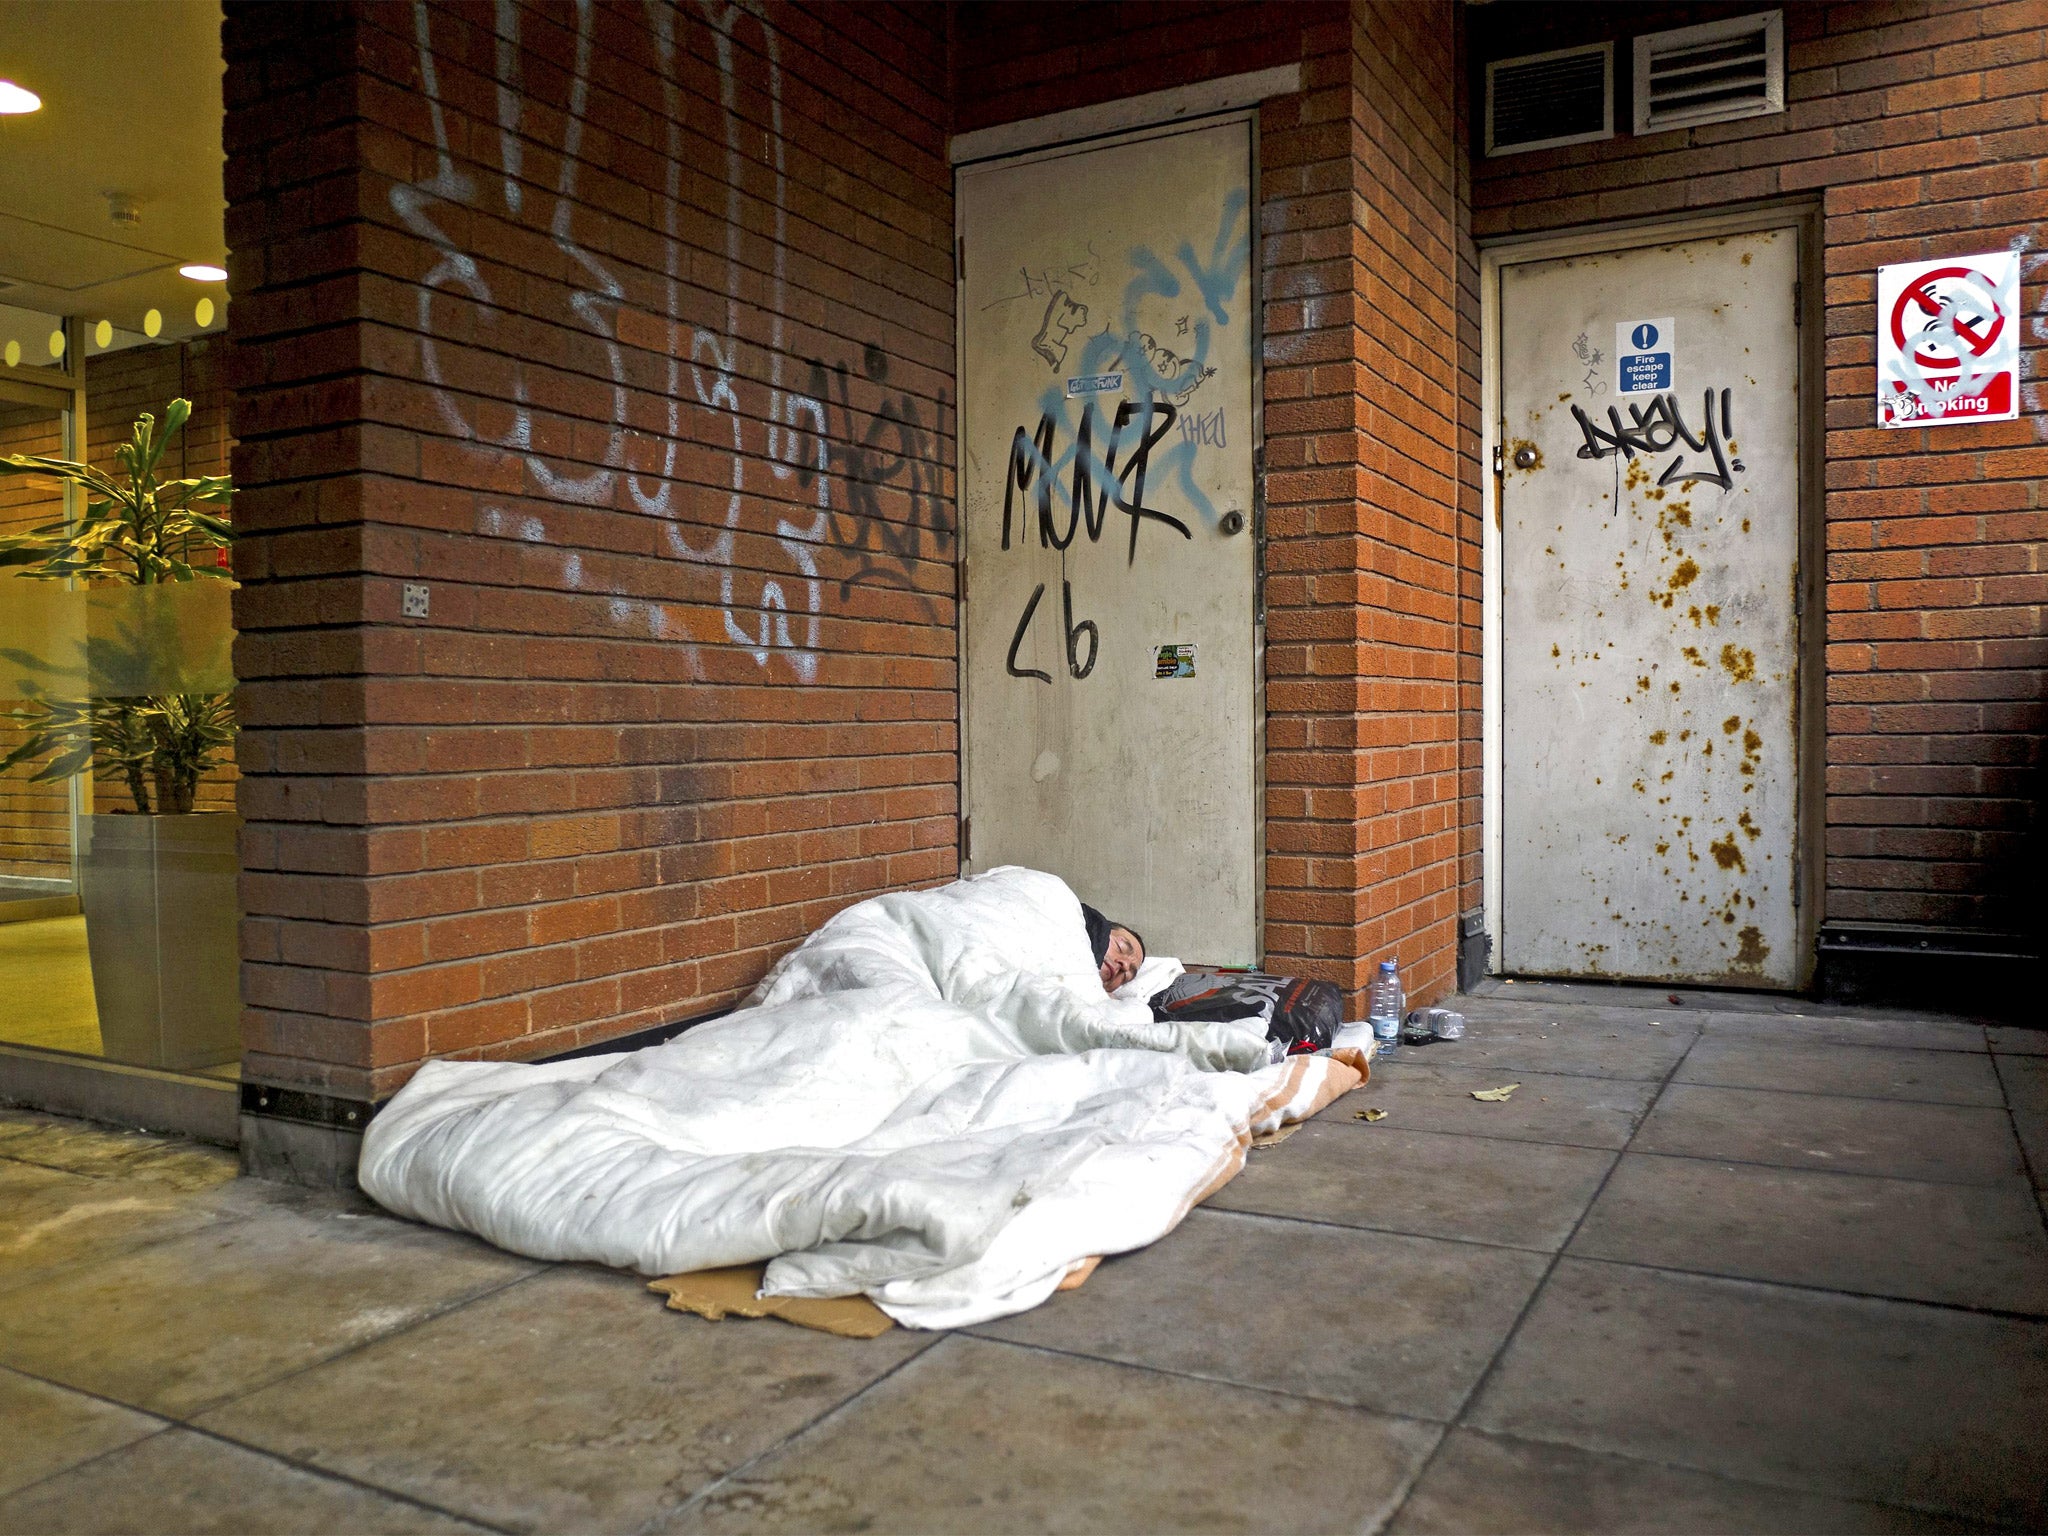 Homeless Lee Evans, 36, sleeping rough in Bristol